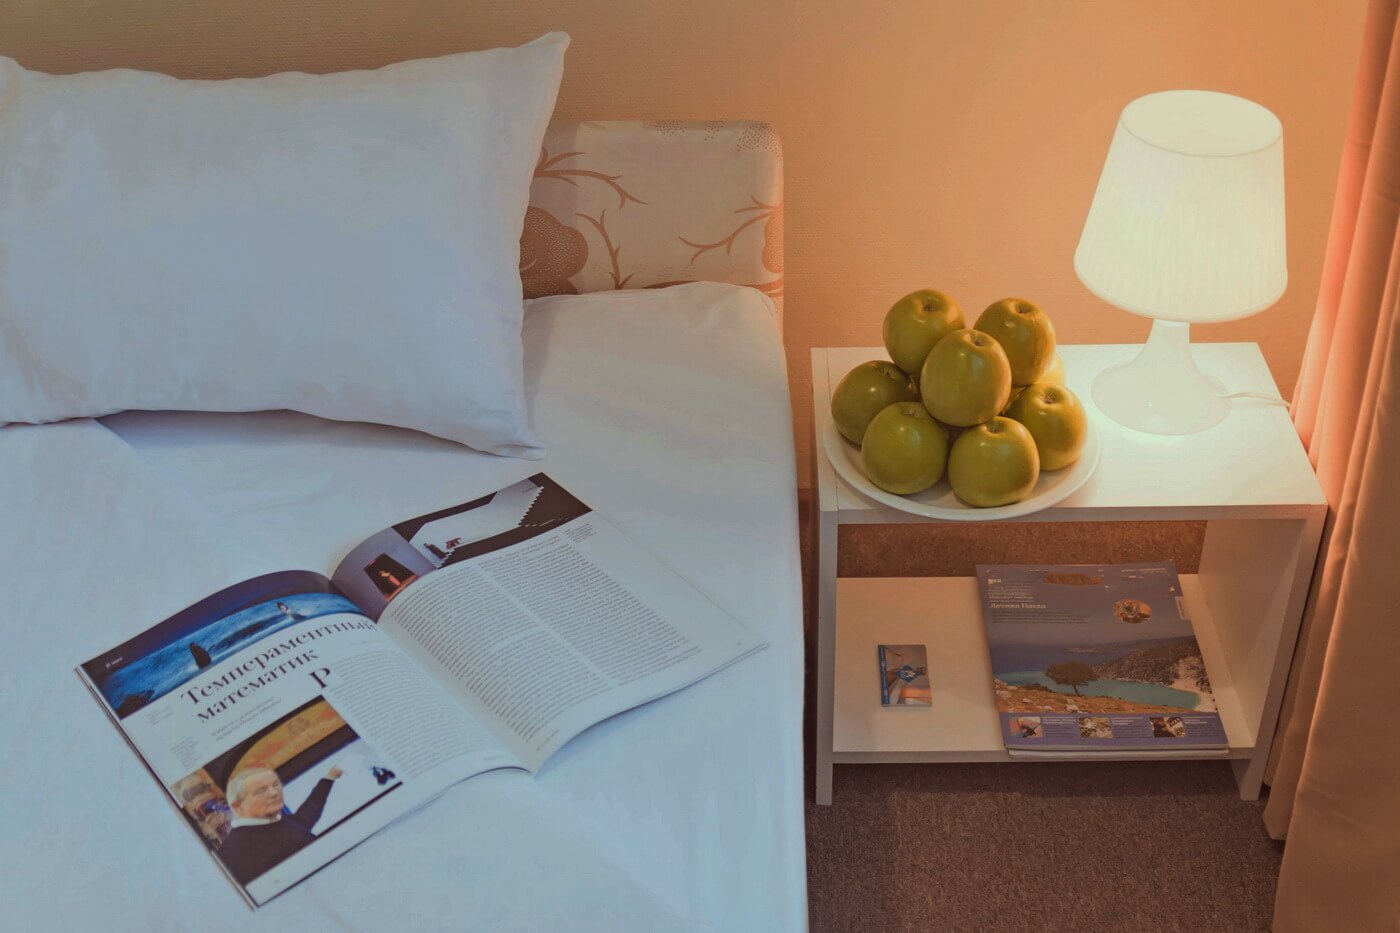 На кровати - журнал, на столе возле лампы - яблоки.